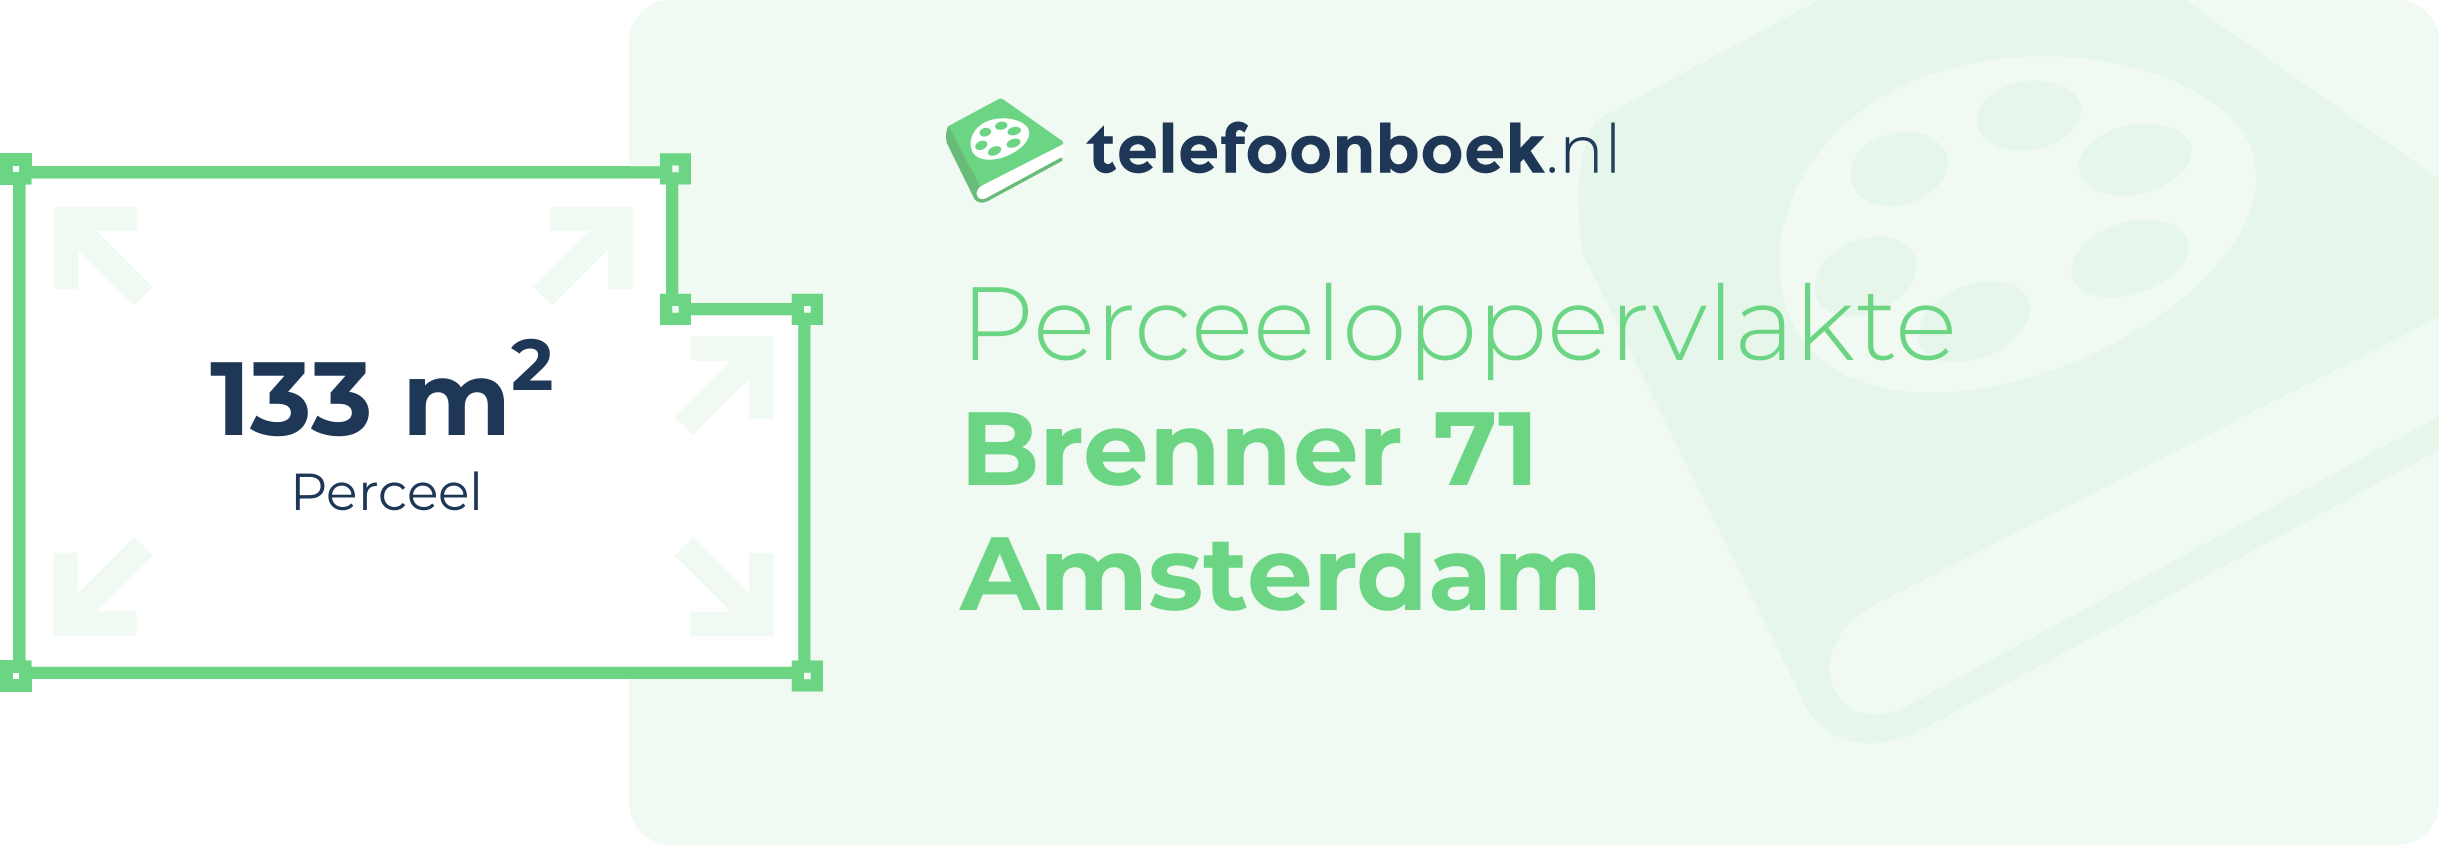 Perceeloppervlakte Brenner 71 Amsterdam